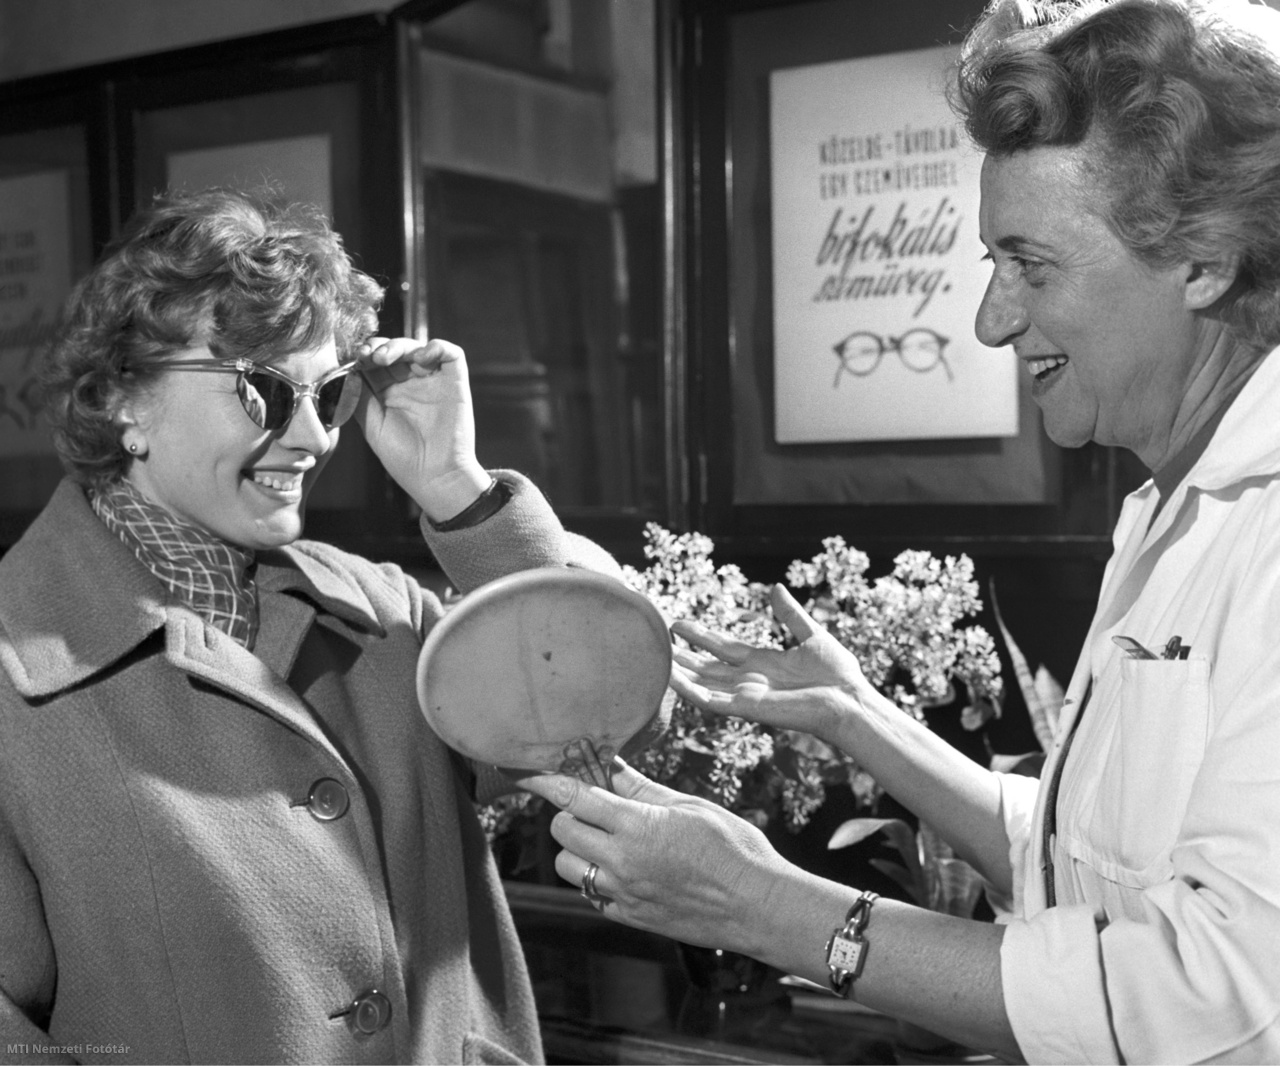 Magyarország, 1960. május 6. Egy nő napszemüveget próbál egy optikusszaküzletben. A felvétel készítésének pontos helyszíne ismeretlen